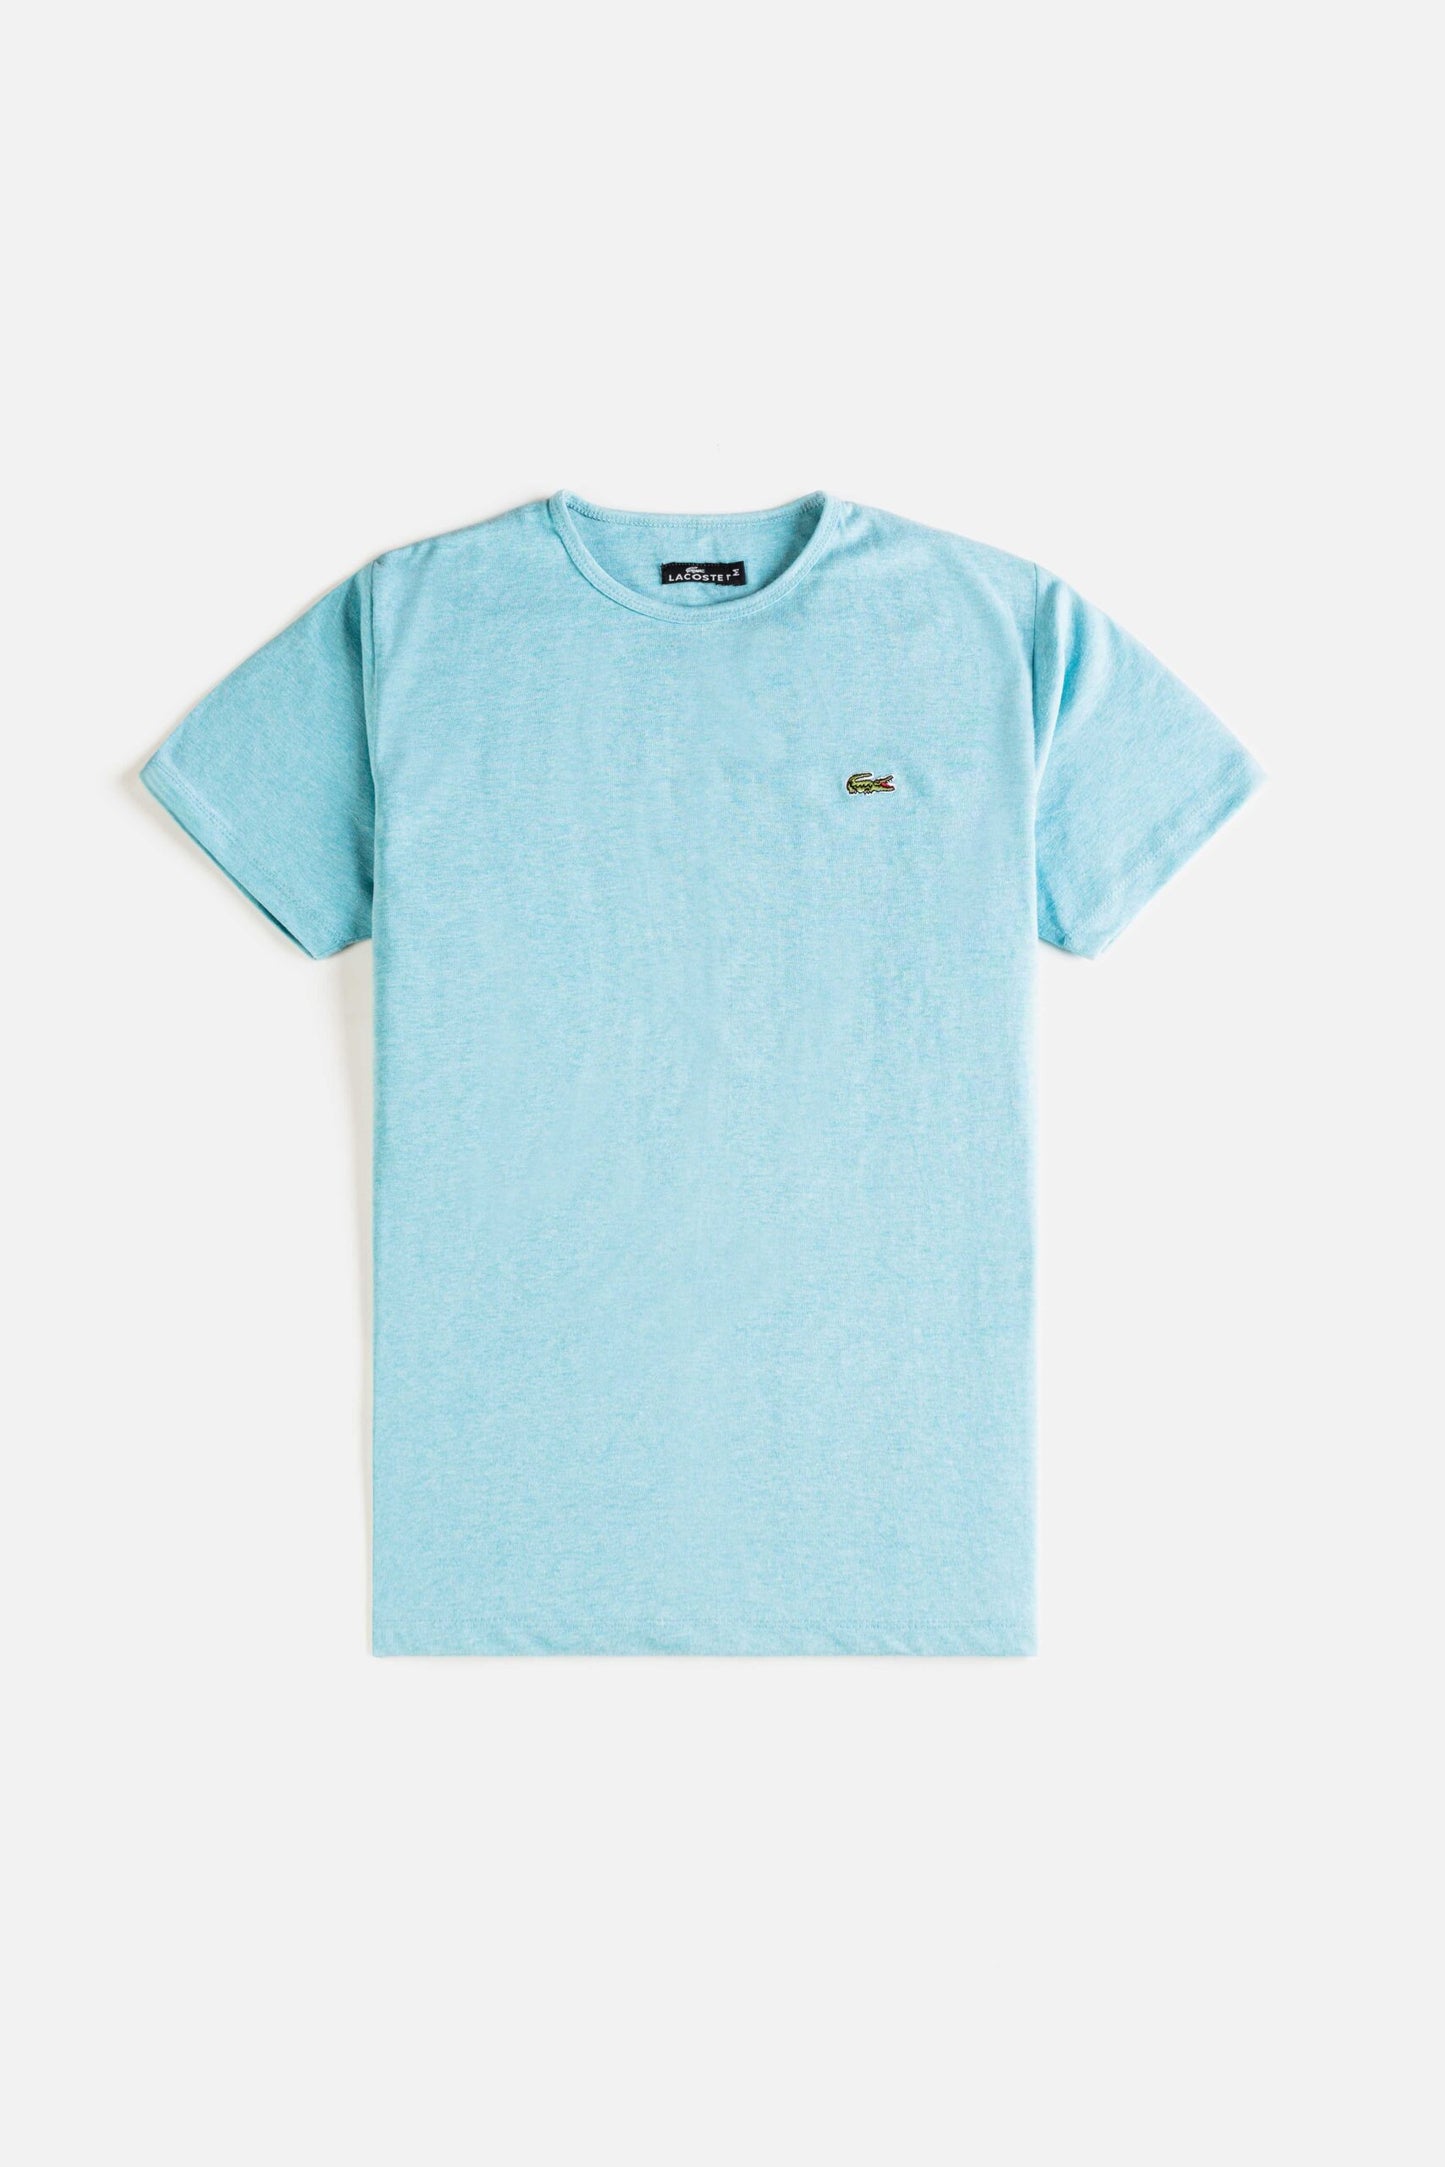 Lacoste Premium Cotton T Shirt – Mint